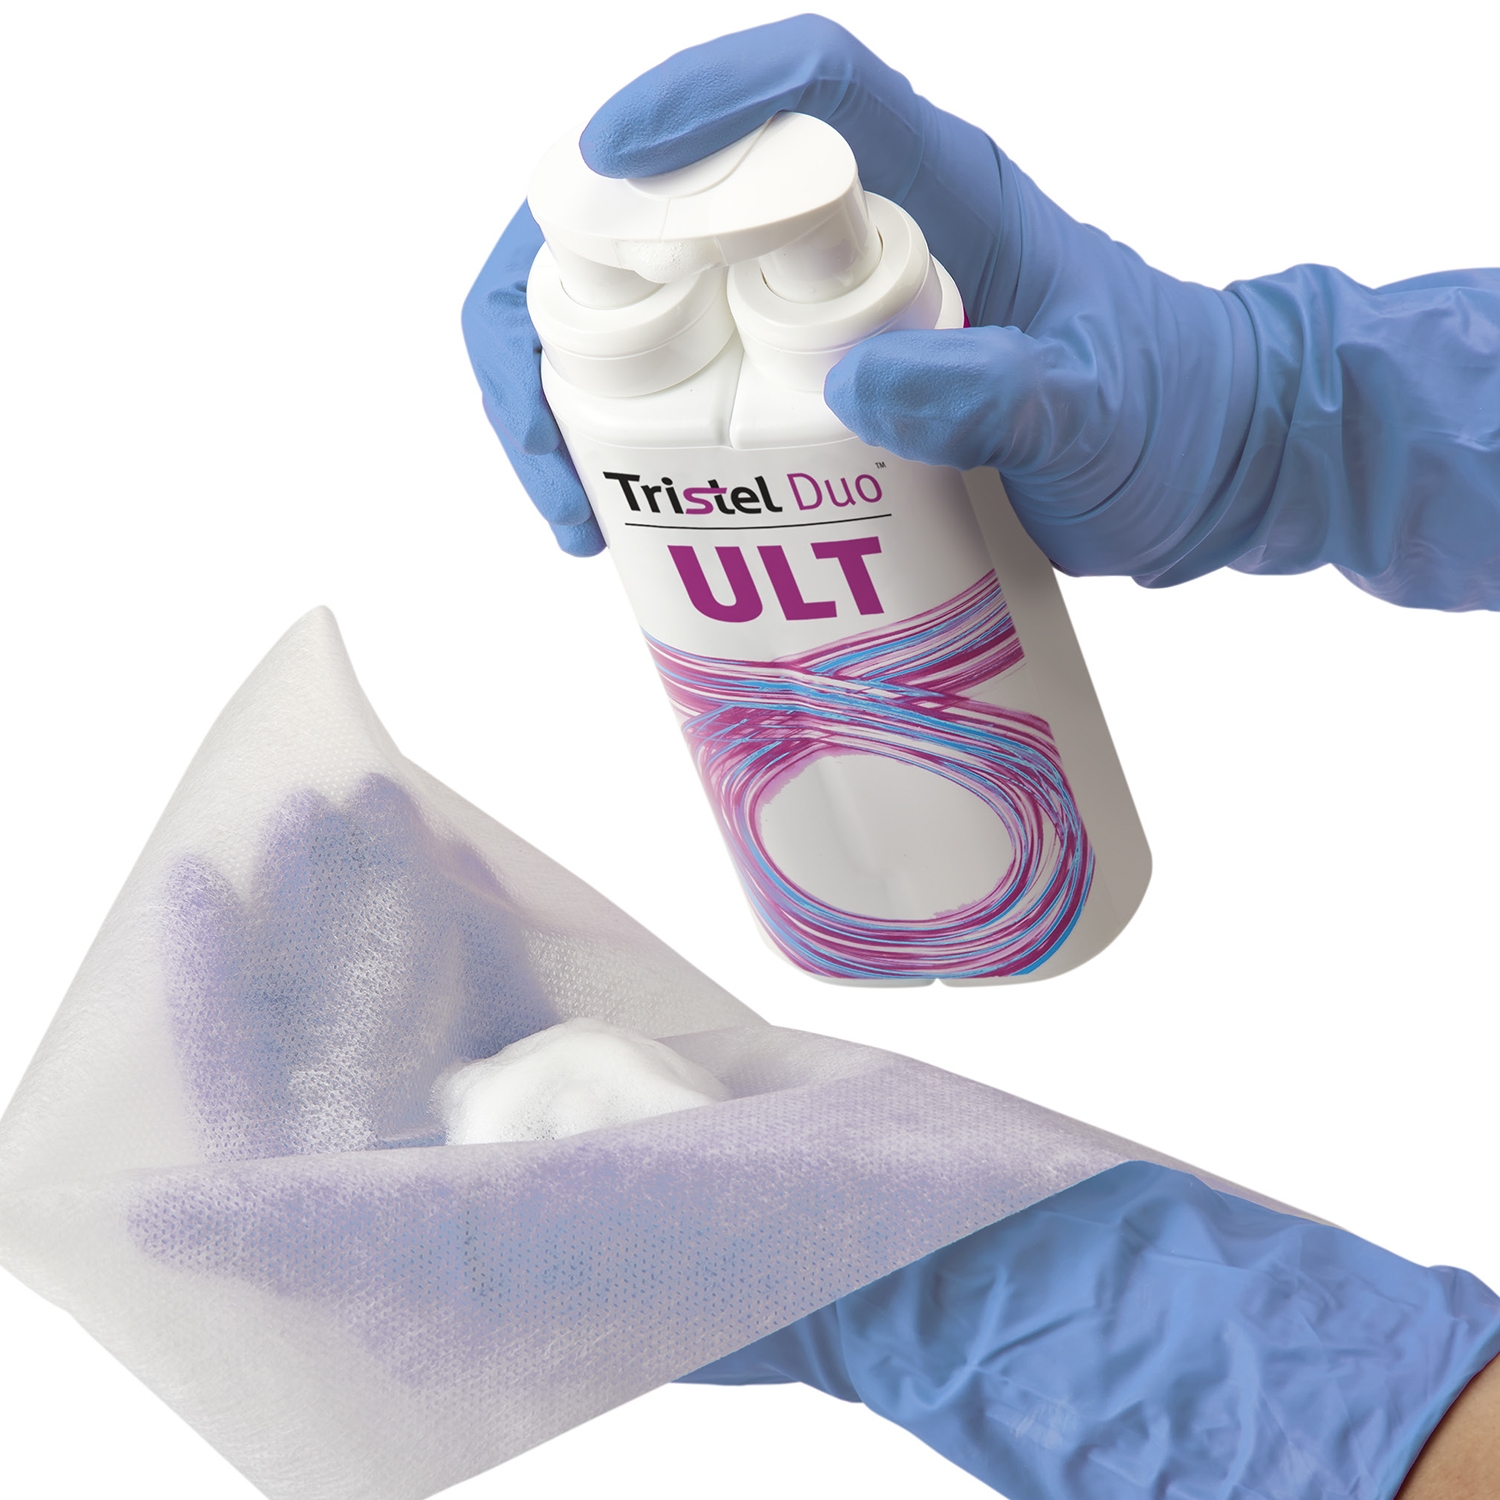 Tristel Duo ULT désinfectant sondes endocavitaires - 250 ml